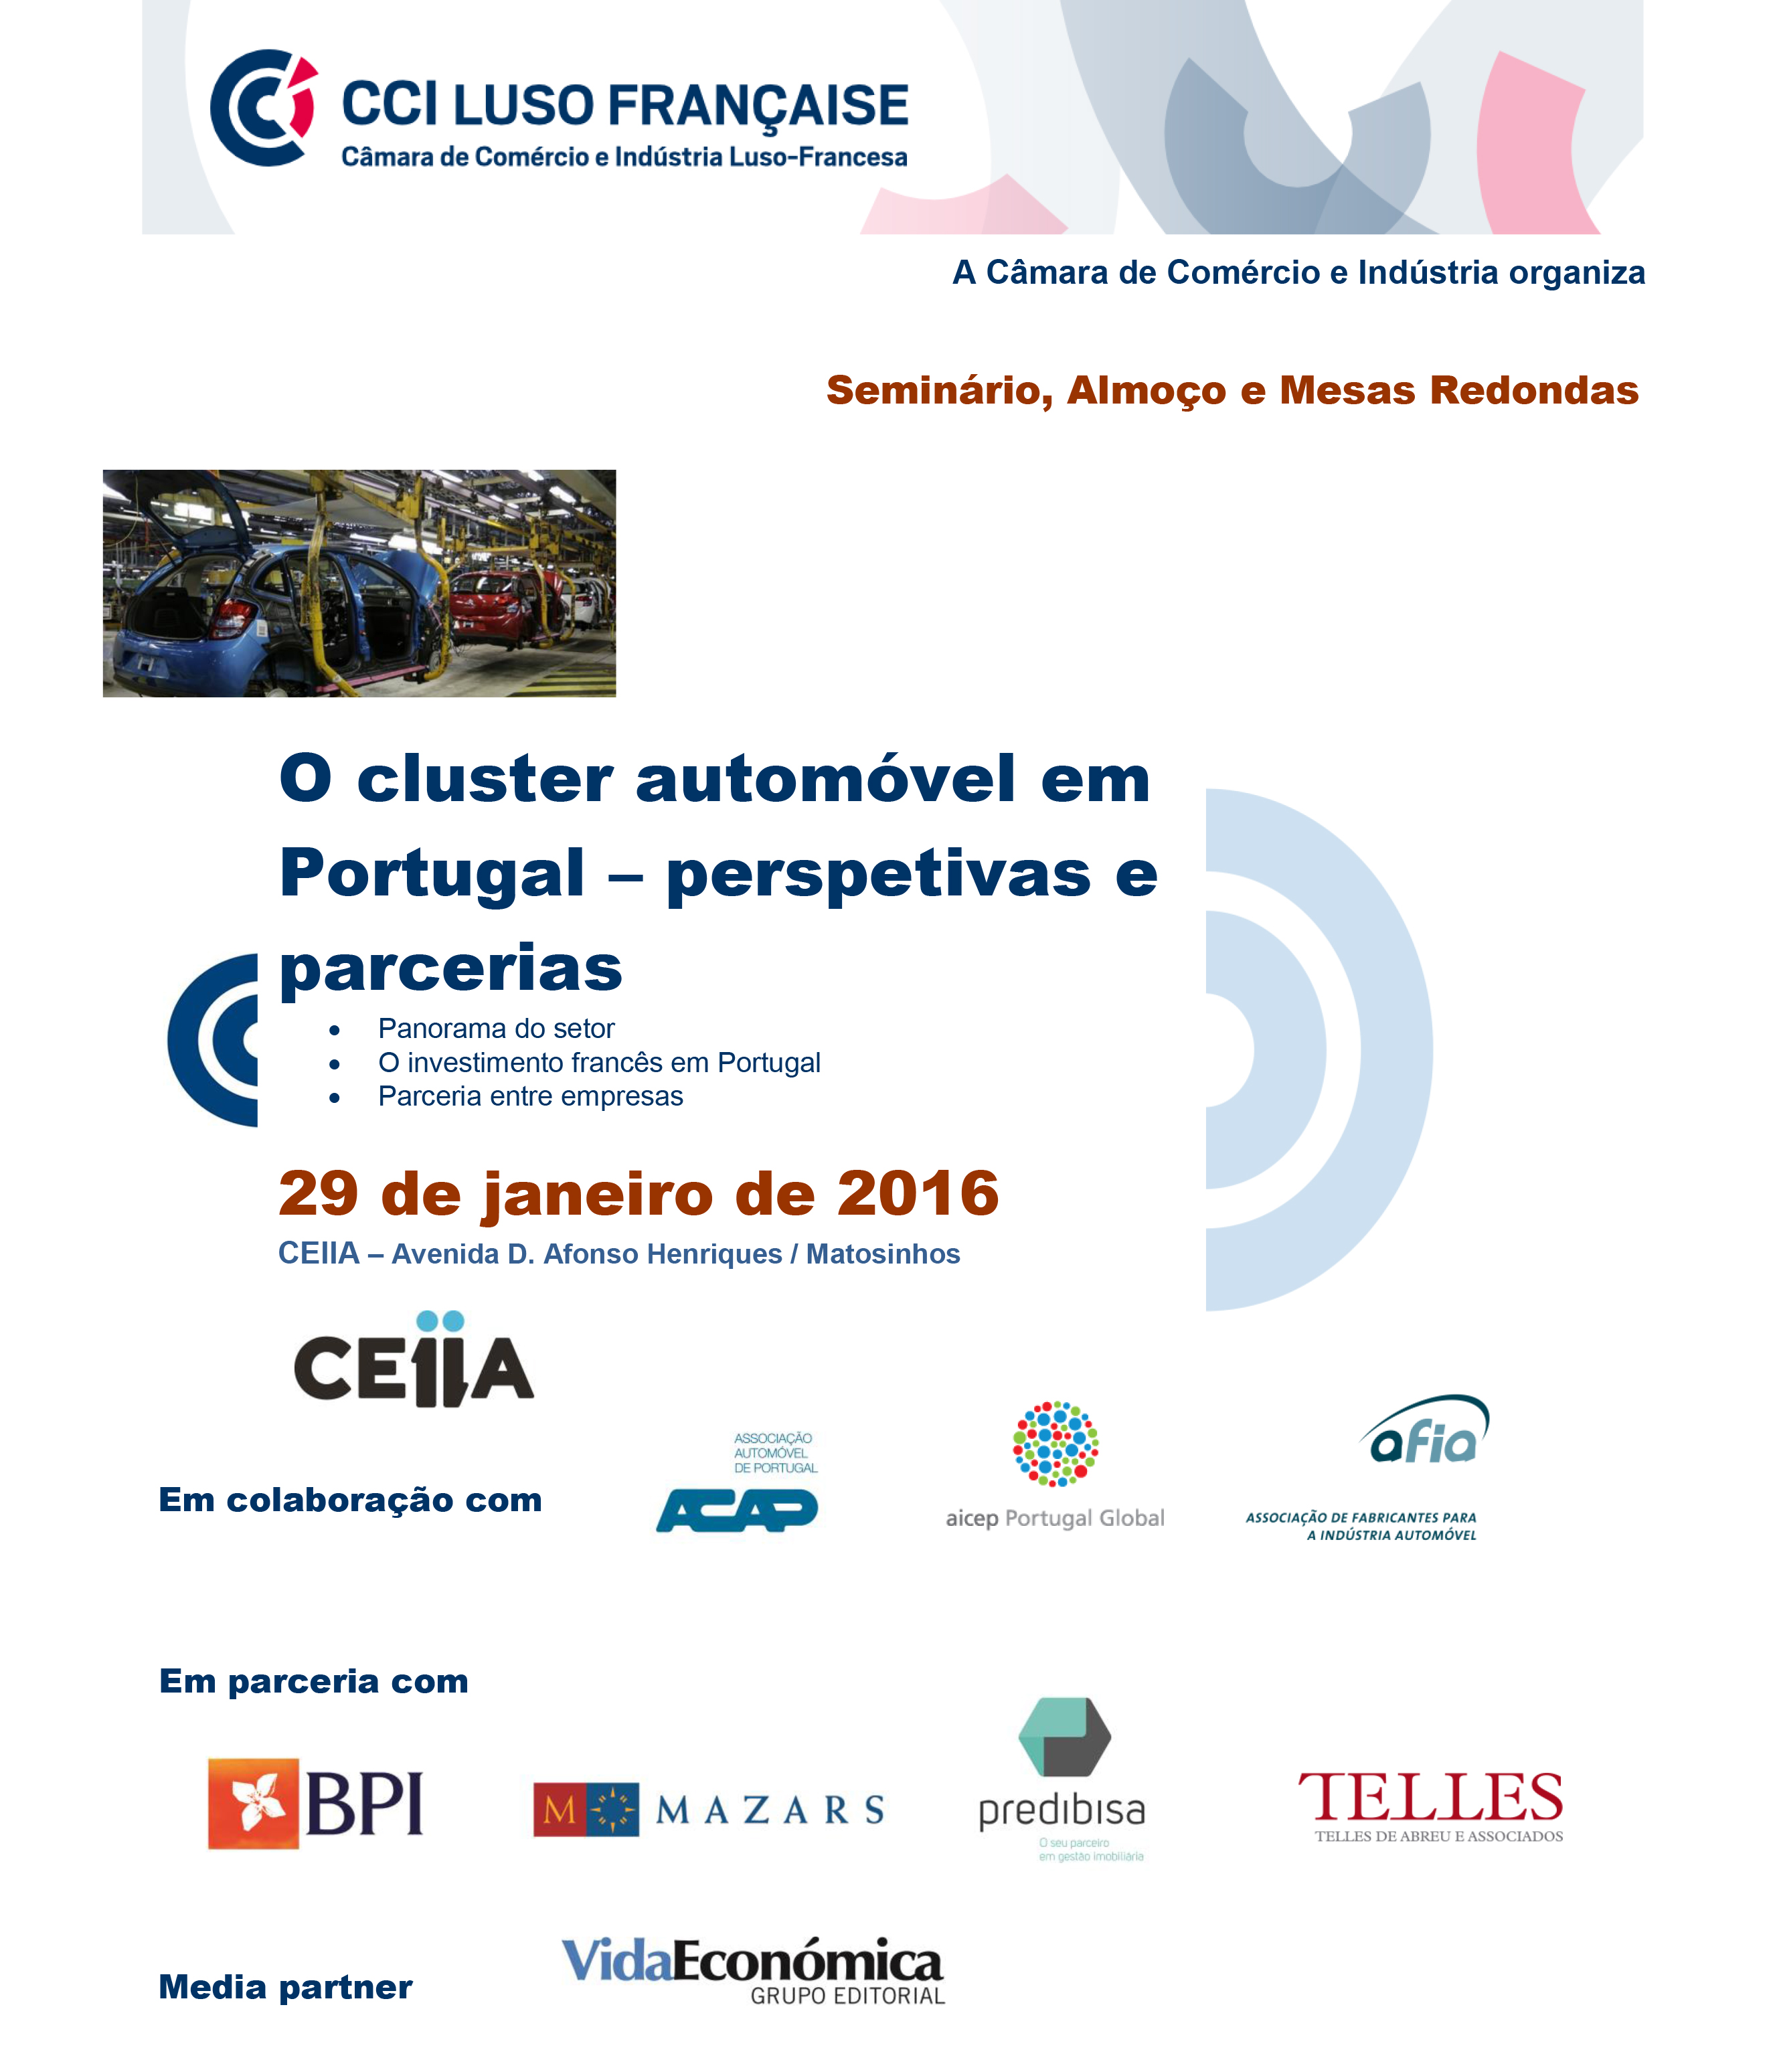 216-02-1193CCILF_Automobile-2016-portugais-1